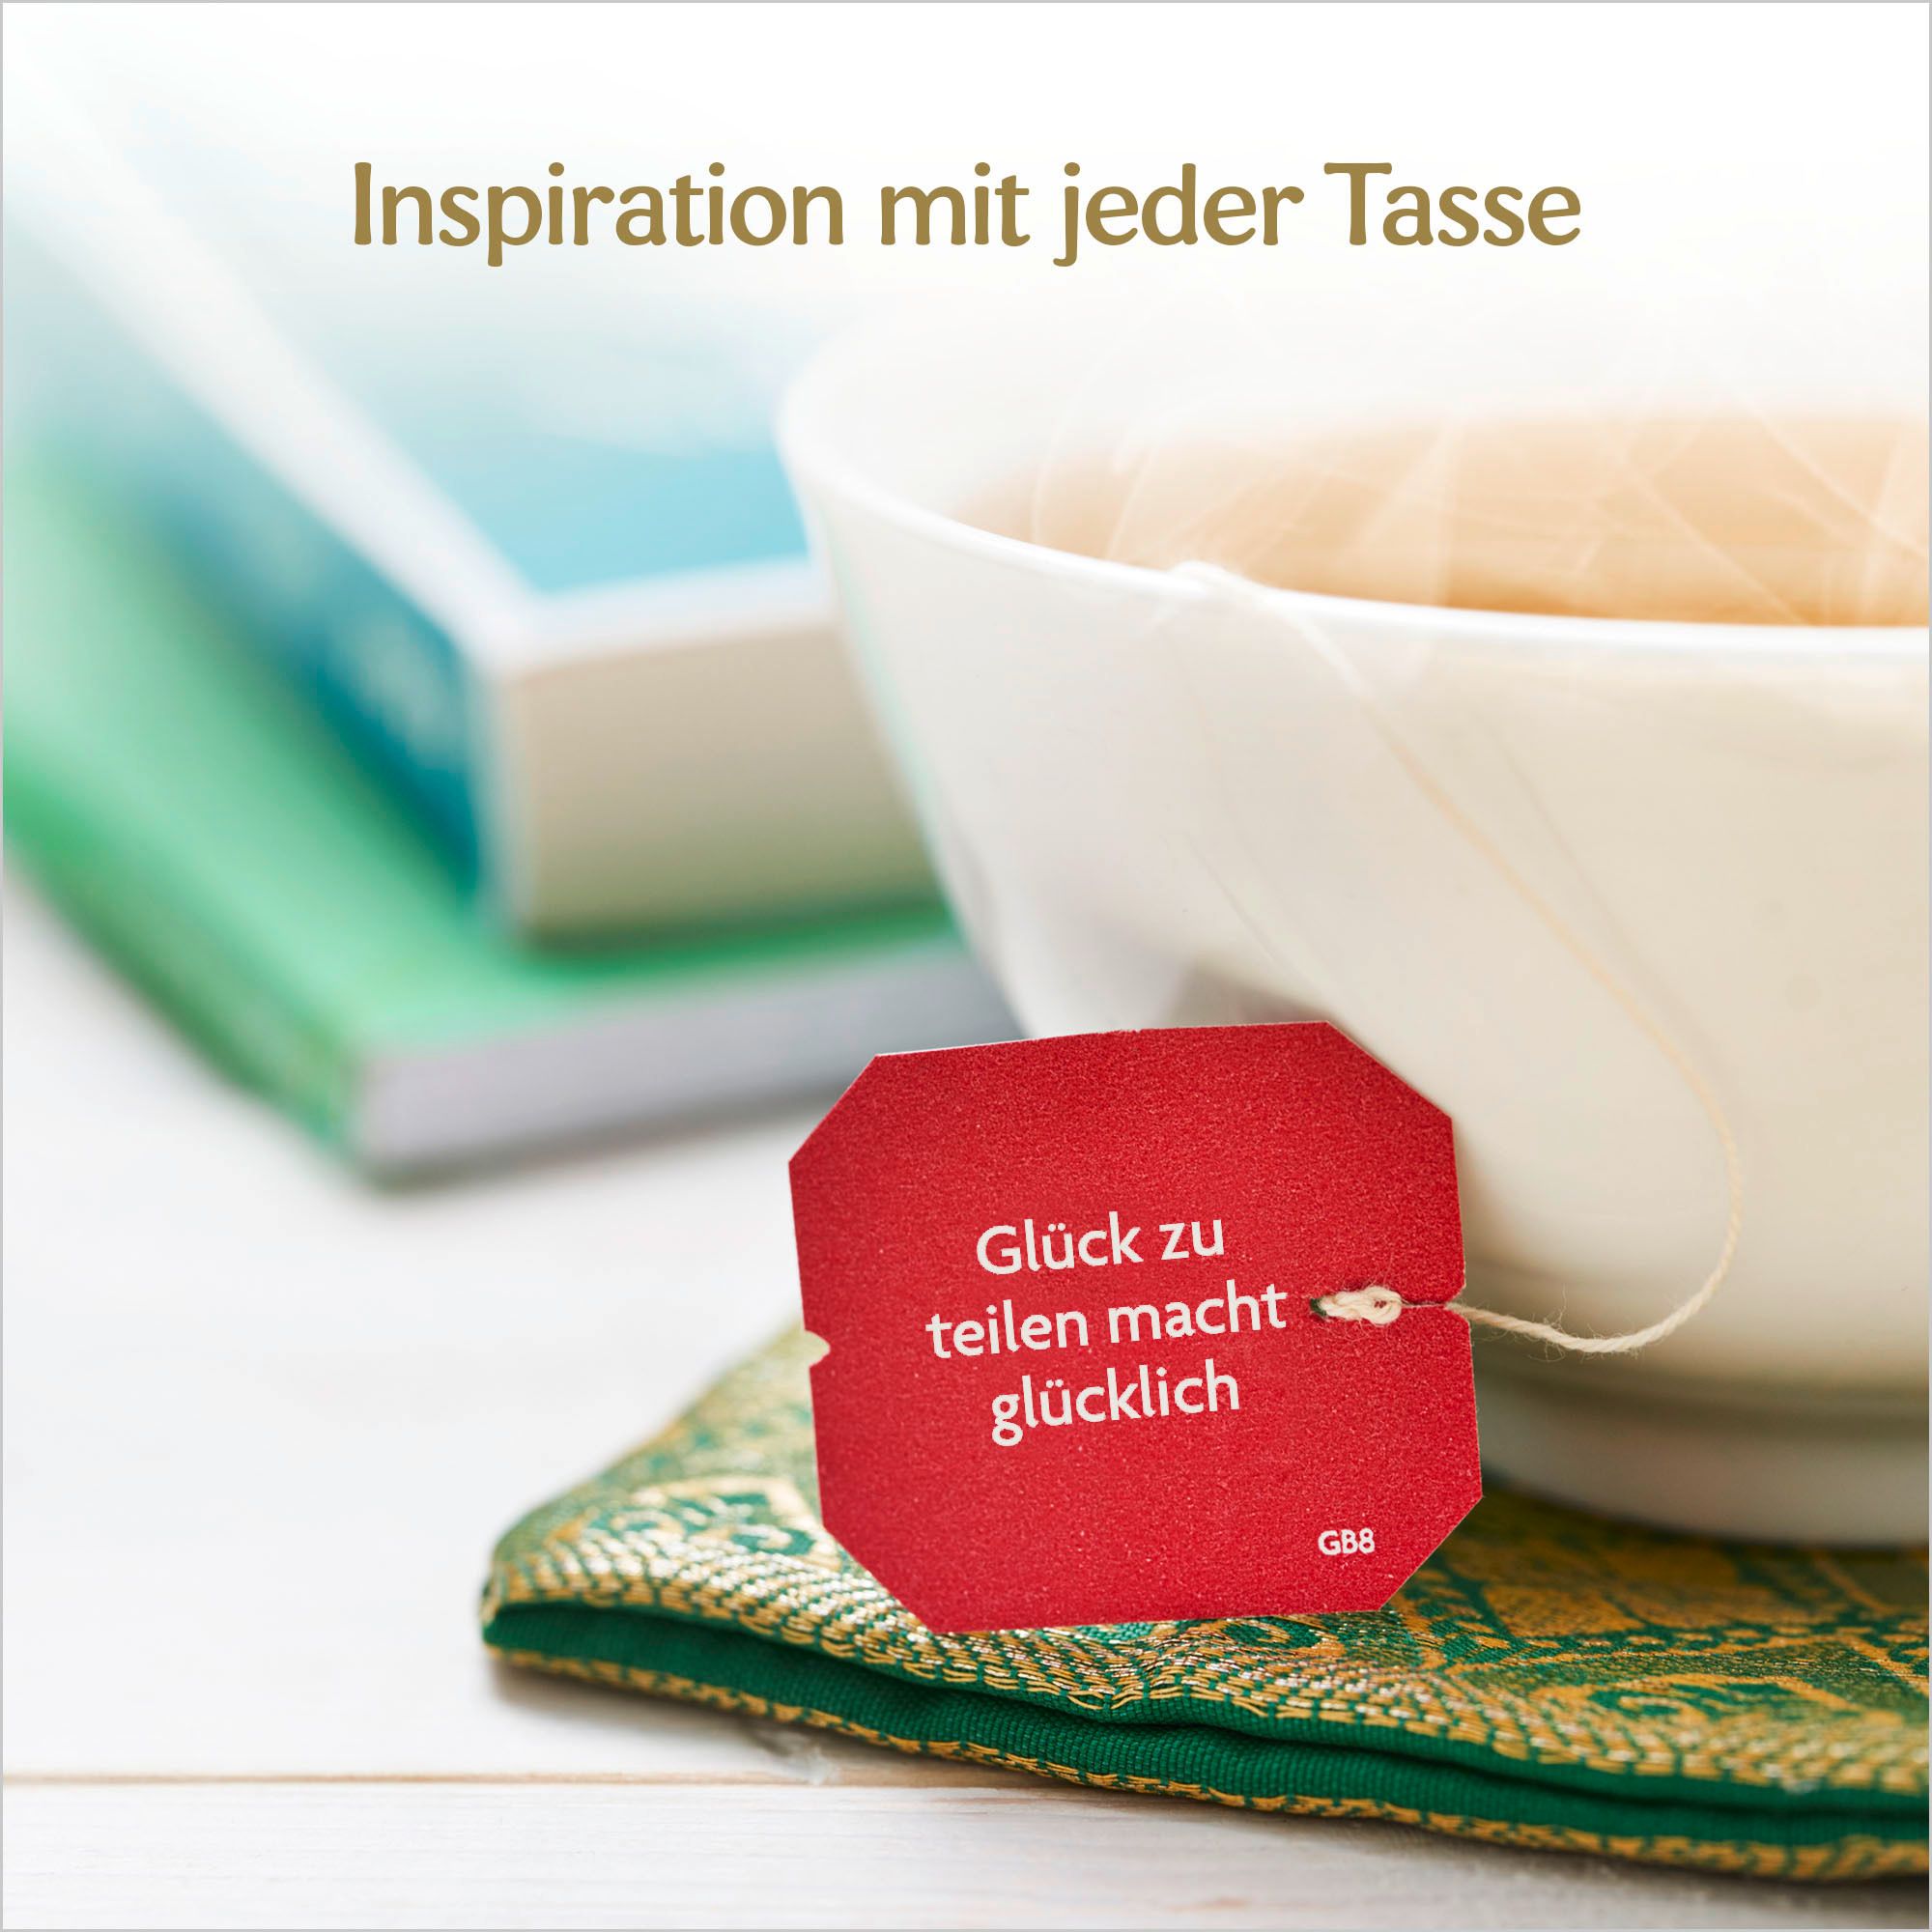 YOGI TEA® Grüne Harmonie, Grüner Bio Kräutertee